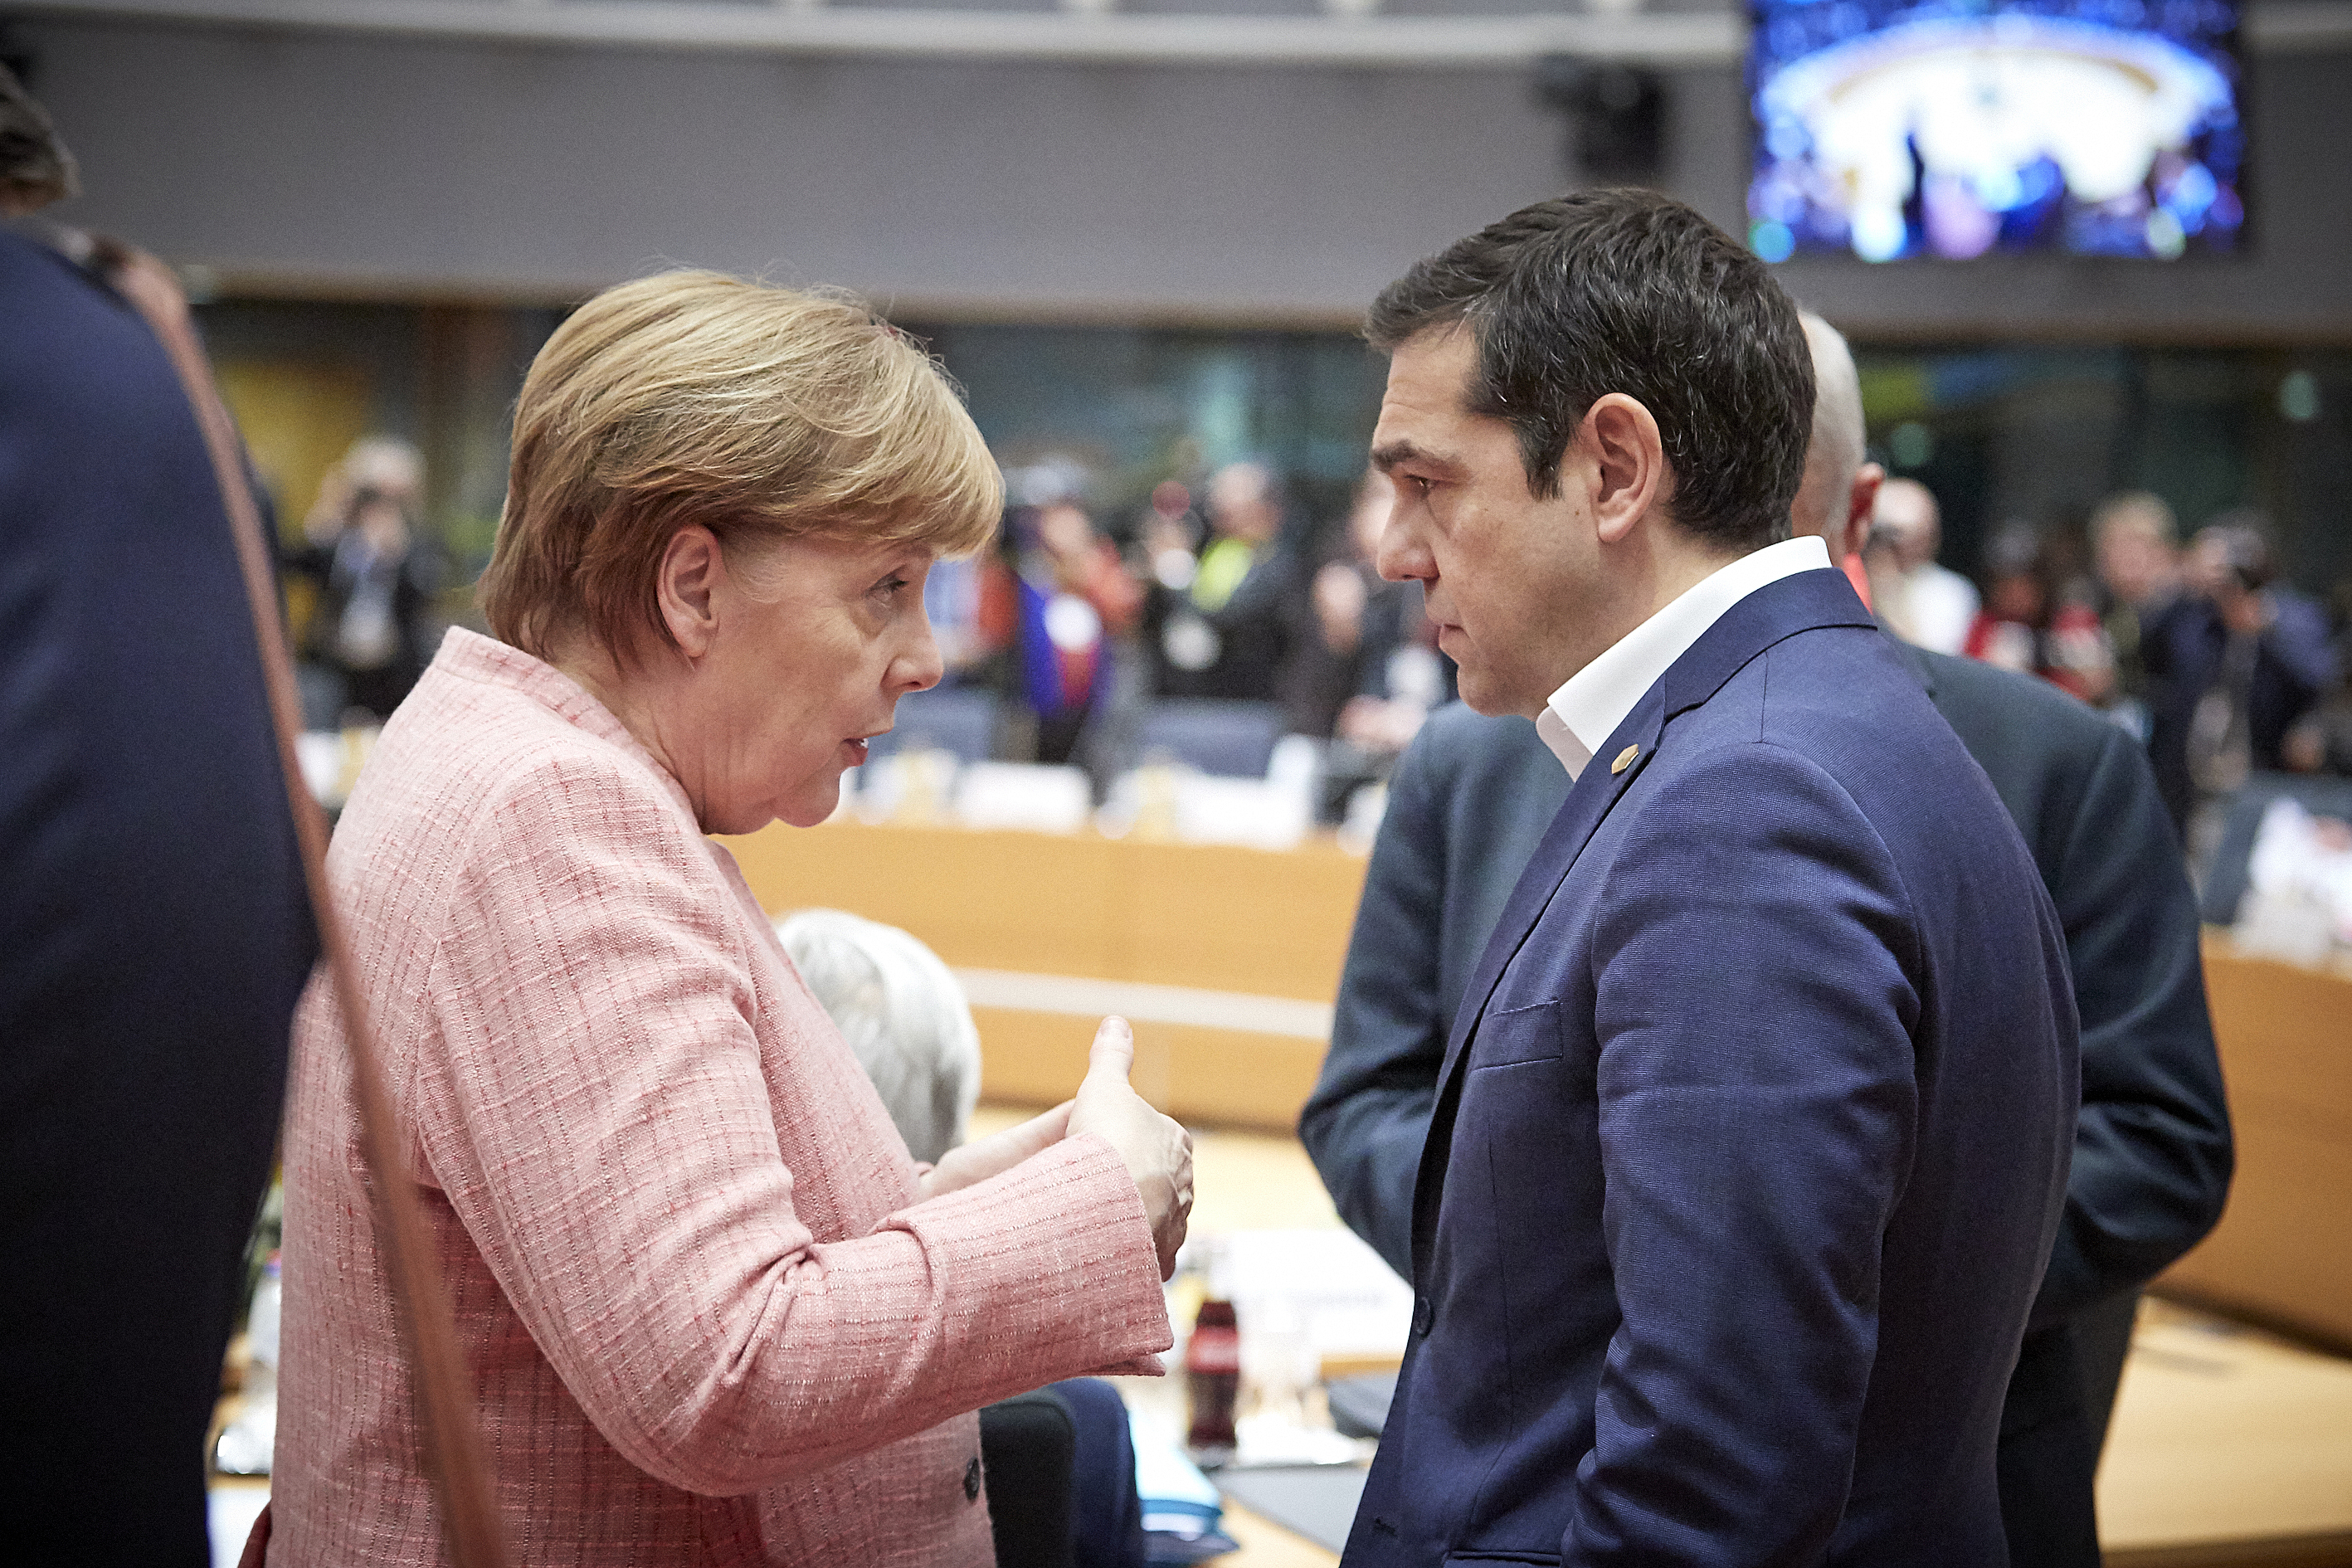 Το ηχηρό μήνυμα της ΕΕ προς την Τουρκία φέρνει ικανοποίηση στην Αθήνα – Ανοικτοί οι δίαυλοι επικοινωνίας Ελλάδας-Ρωσίας